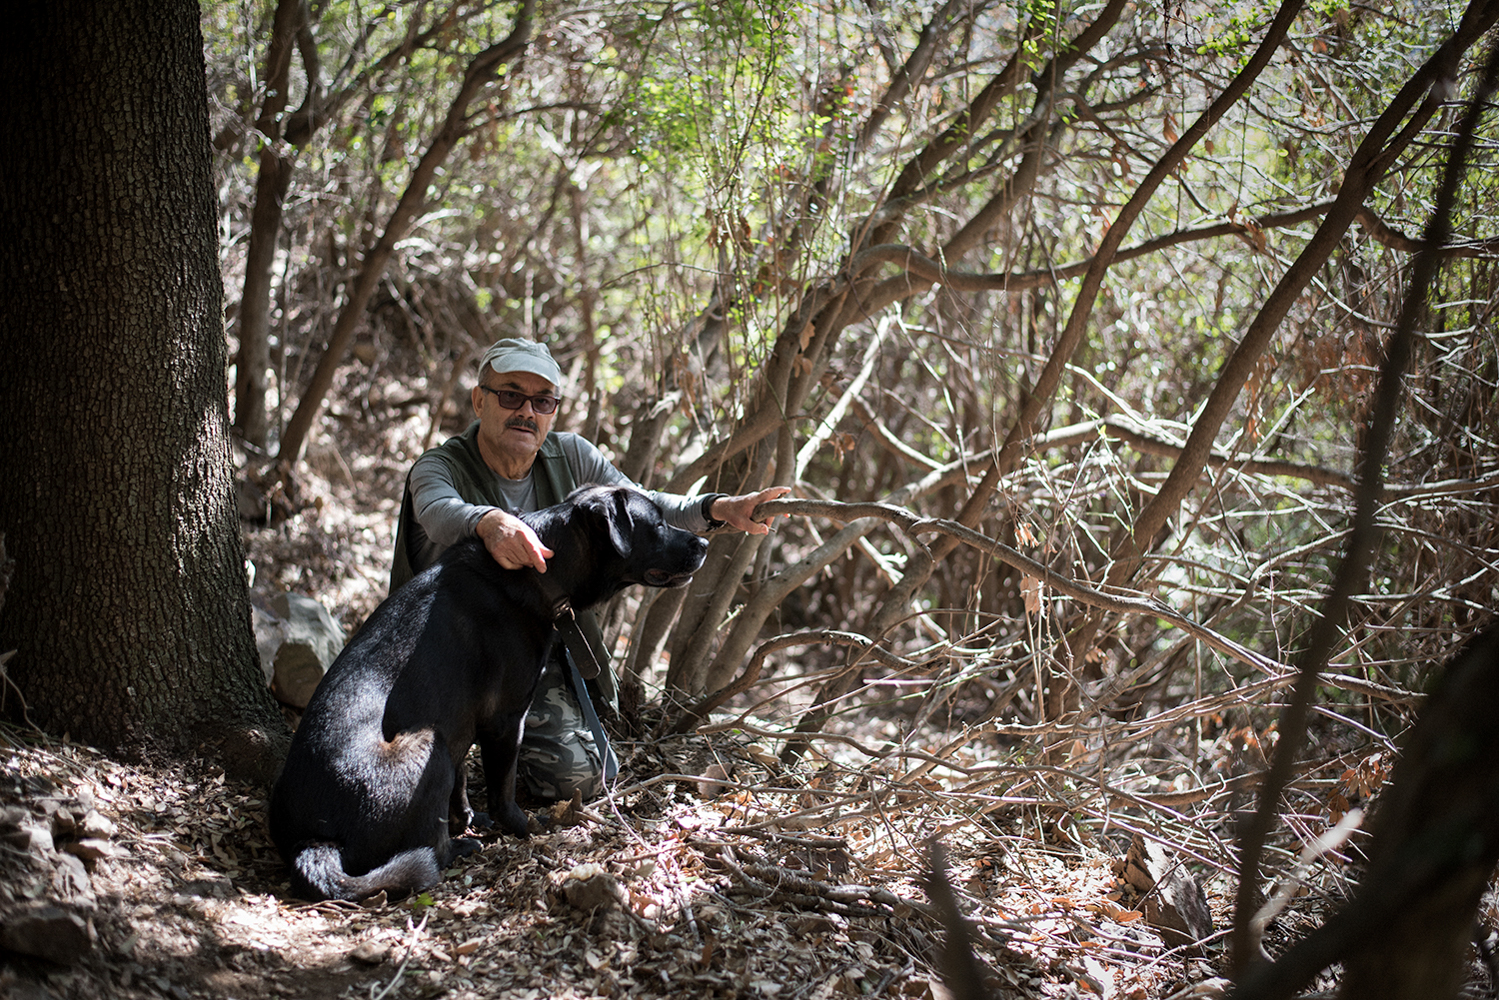  Raffaele, voce critica nonché appassionato escursionista, in compagnia del suo cane Nerone, promuove, tramite la sua intensa attività divulgativa gli angoli meno conosciuti del territorio montano di Sarroch. Sarroch (Cagliari), 2017. 